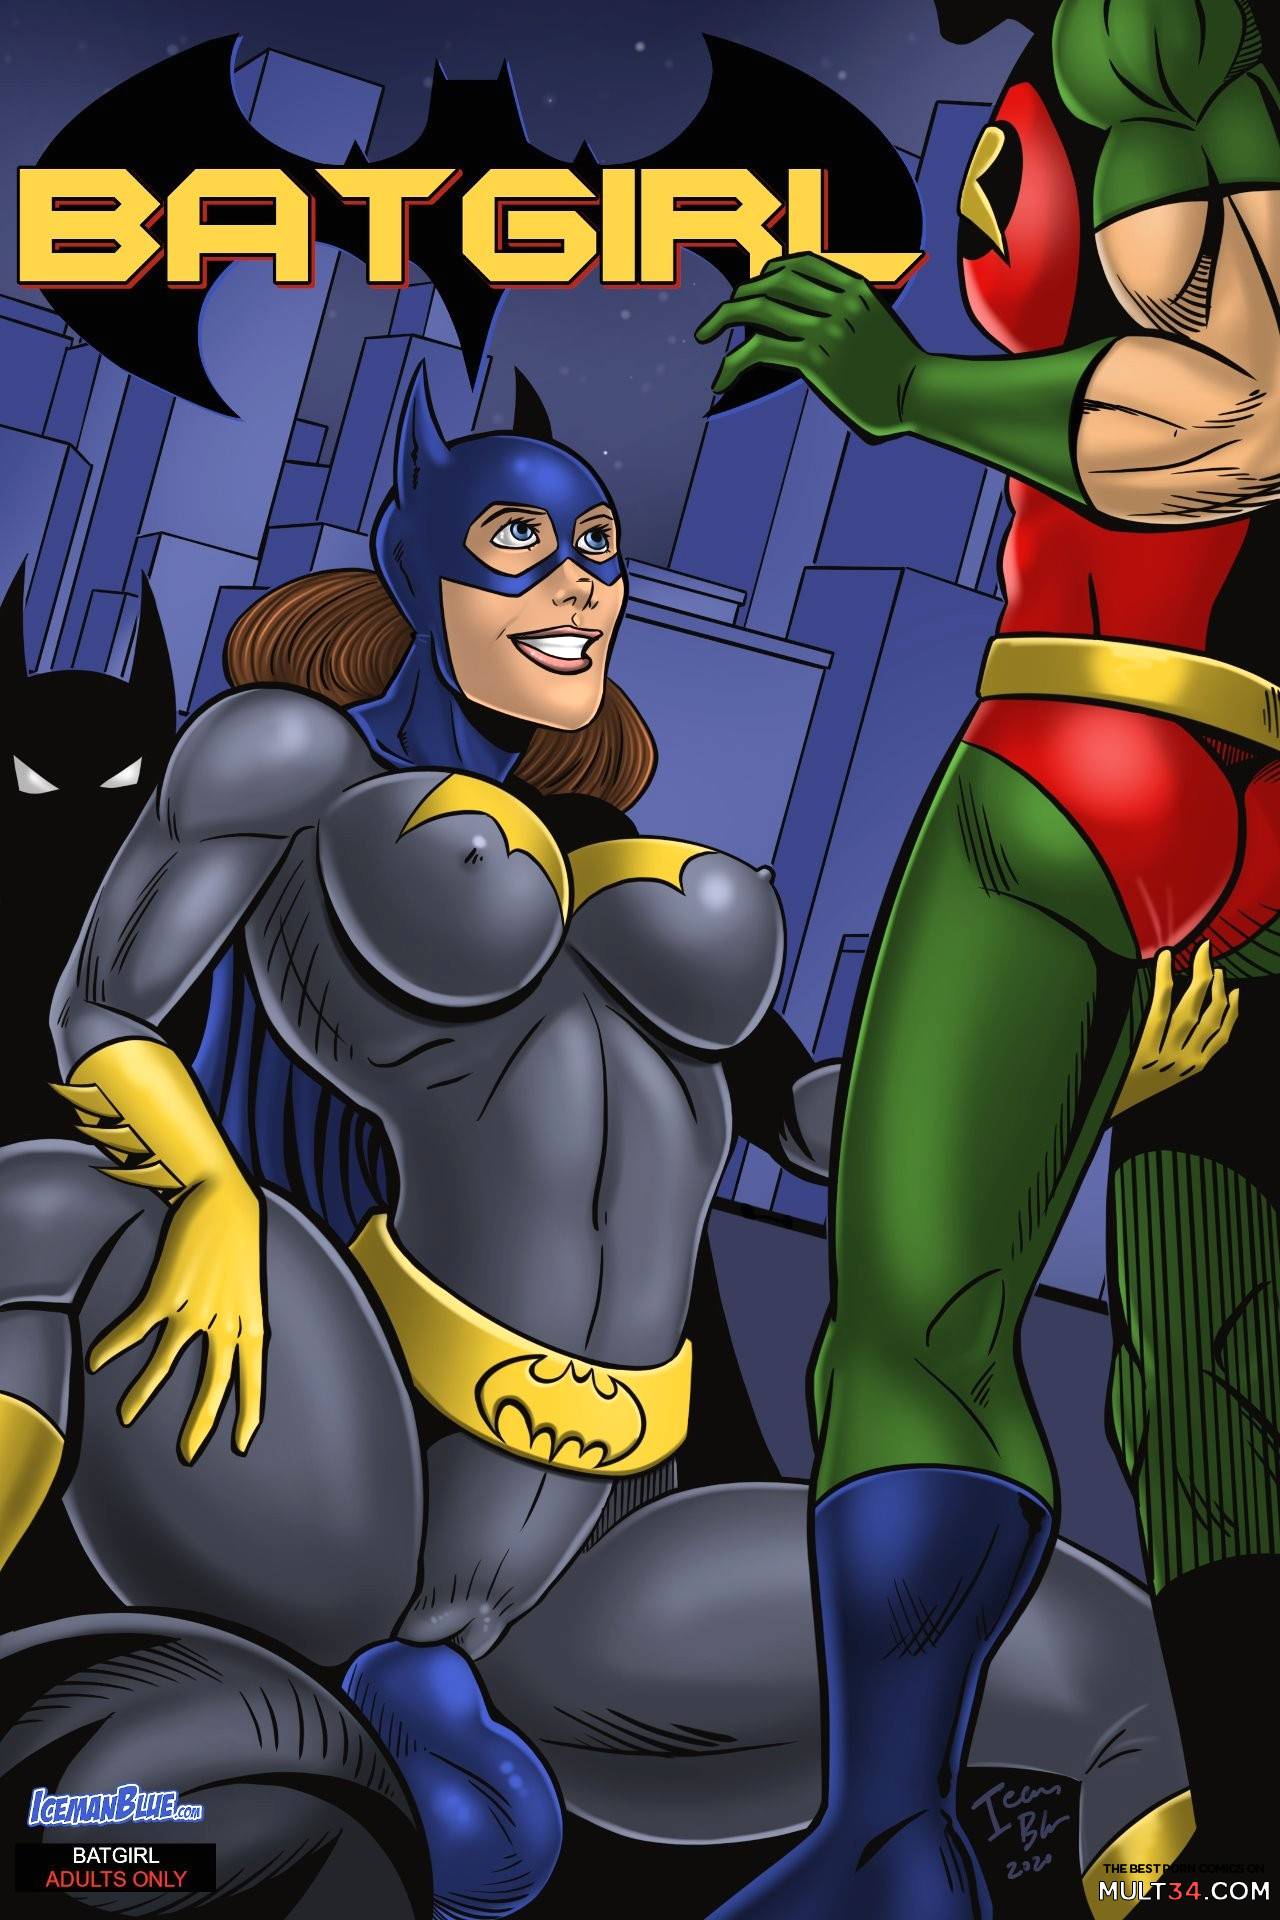 Batgirl Cartoon Xxx - Batgirl gay porn comic - the best cartoon porn comics, Rule 34 | MULT34